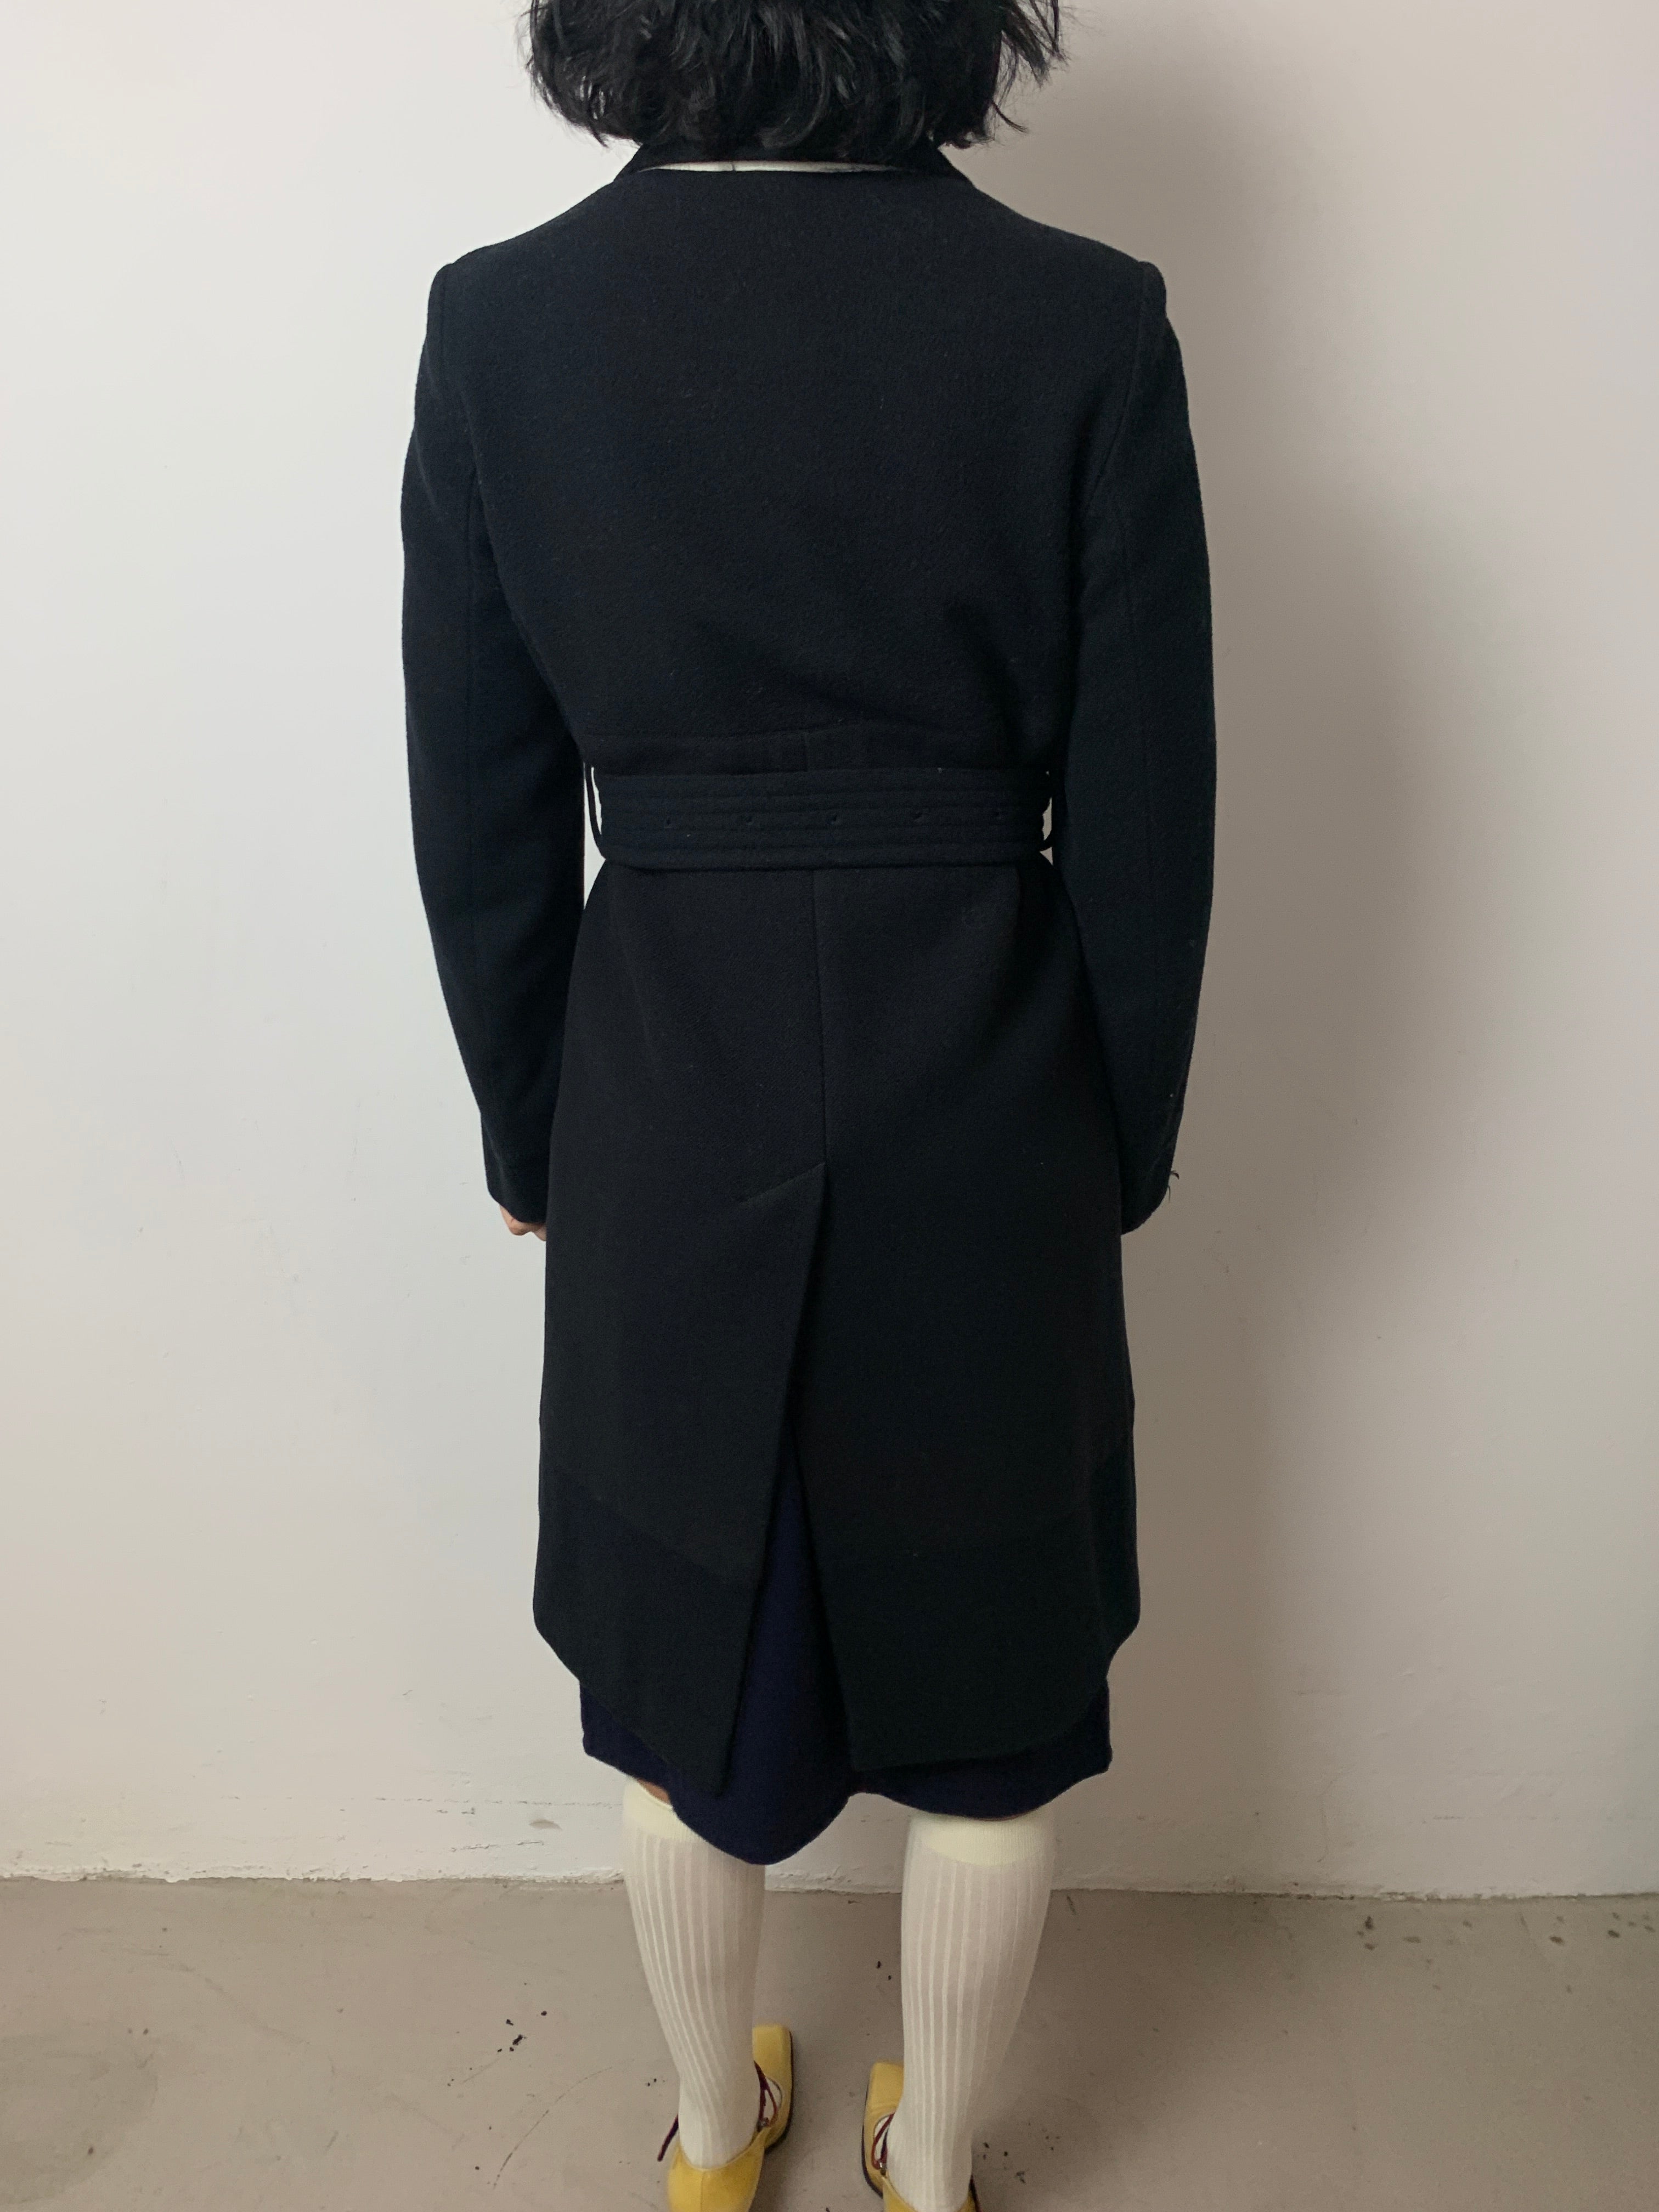 Dries Van Noten navy coat